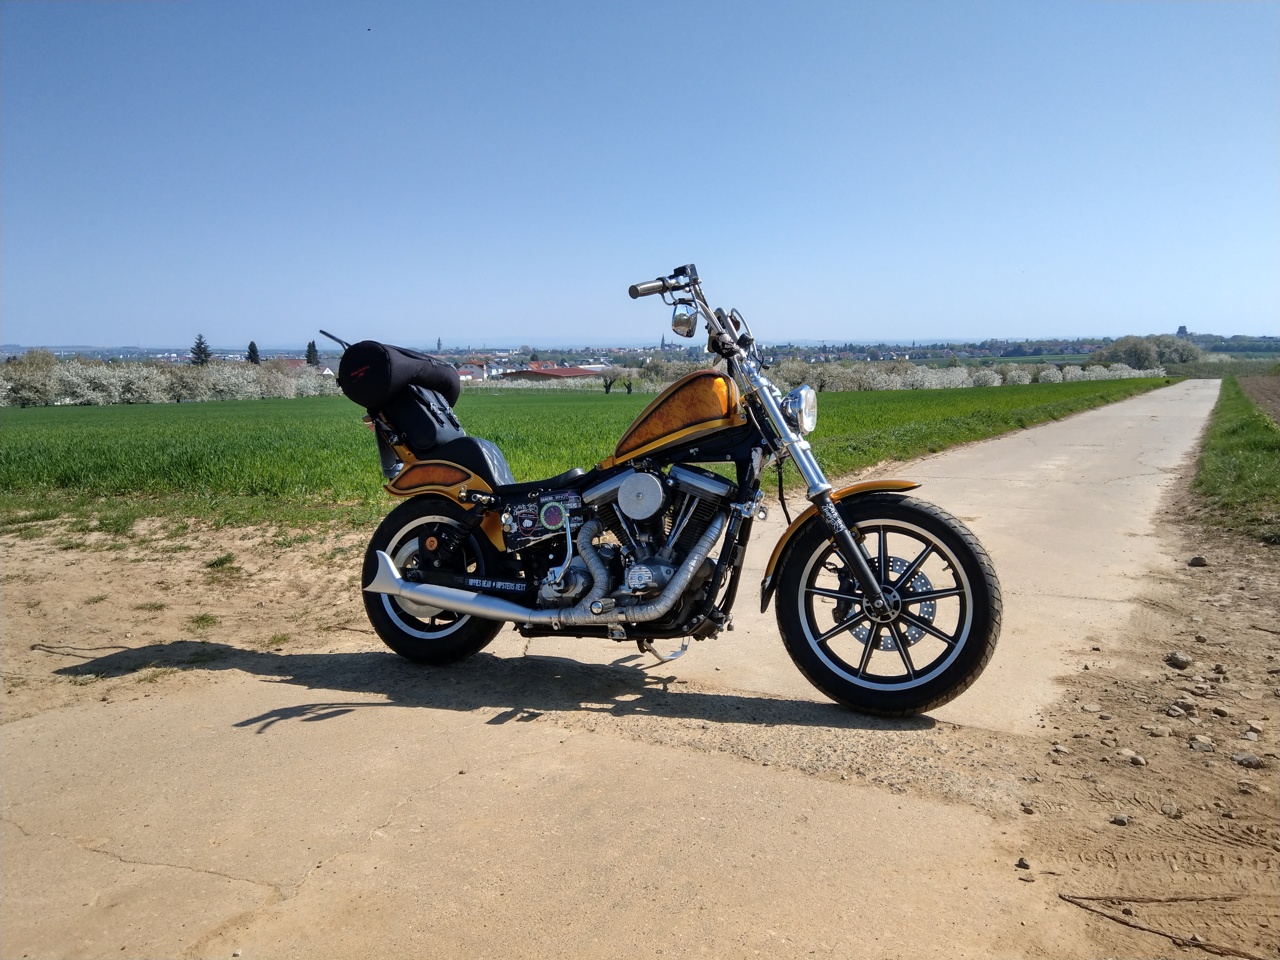 Welche Zundung Ist Das S 1 Milwaukee V Twin Harley Davidson Forum Community